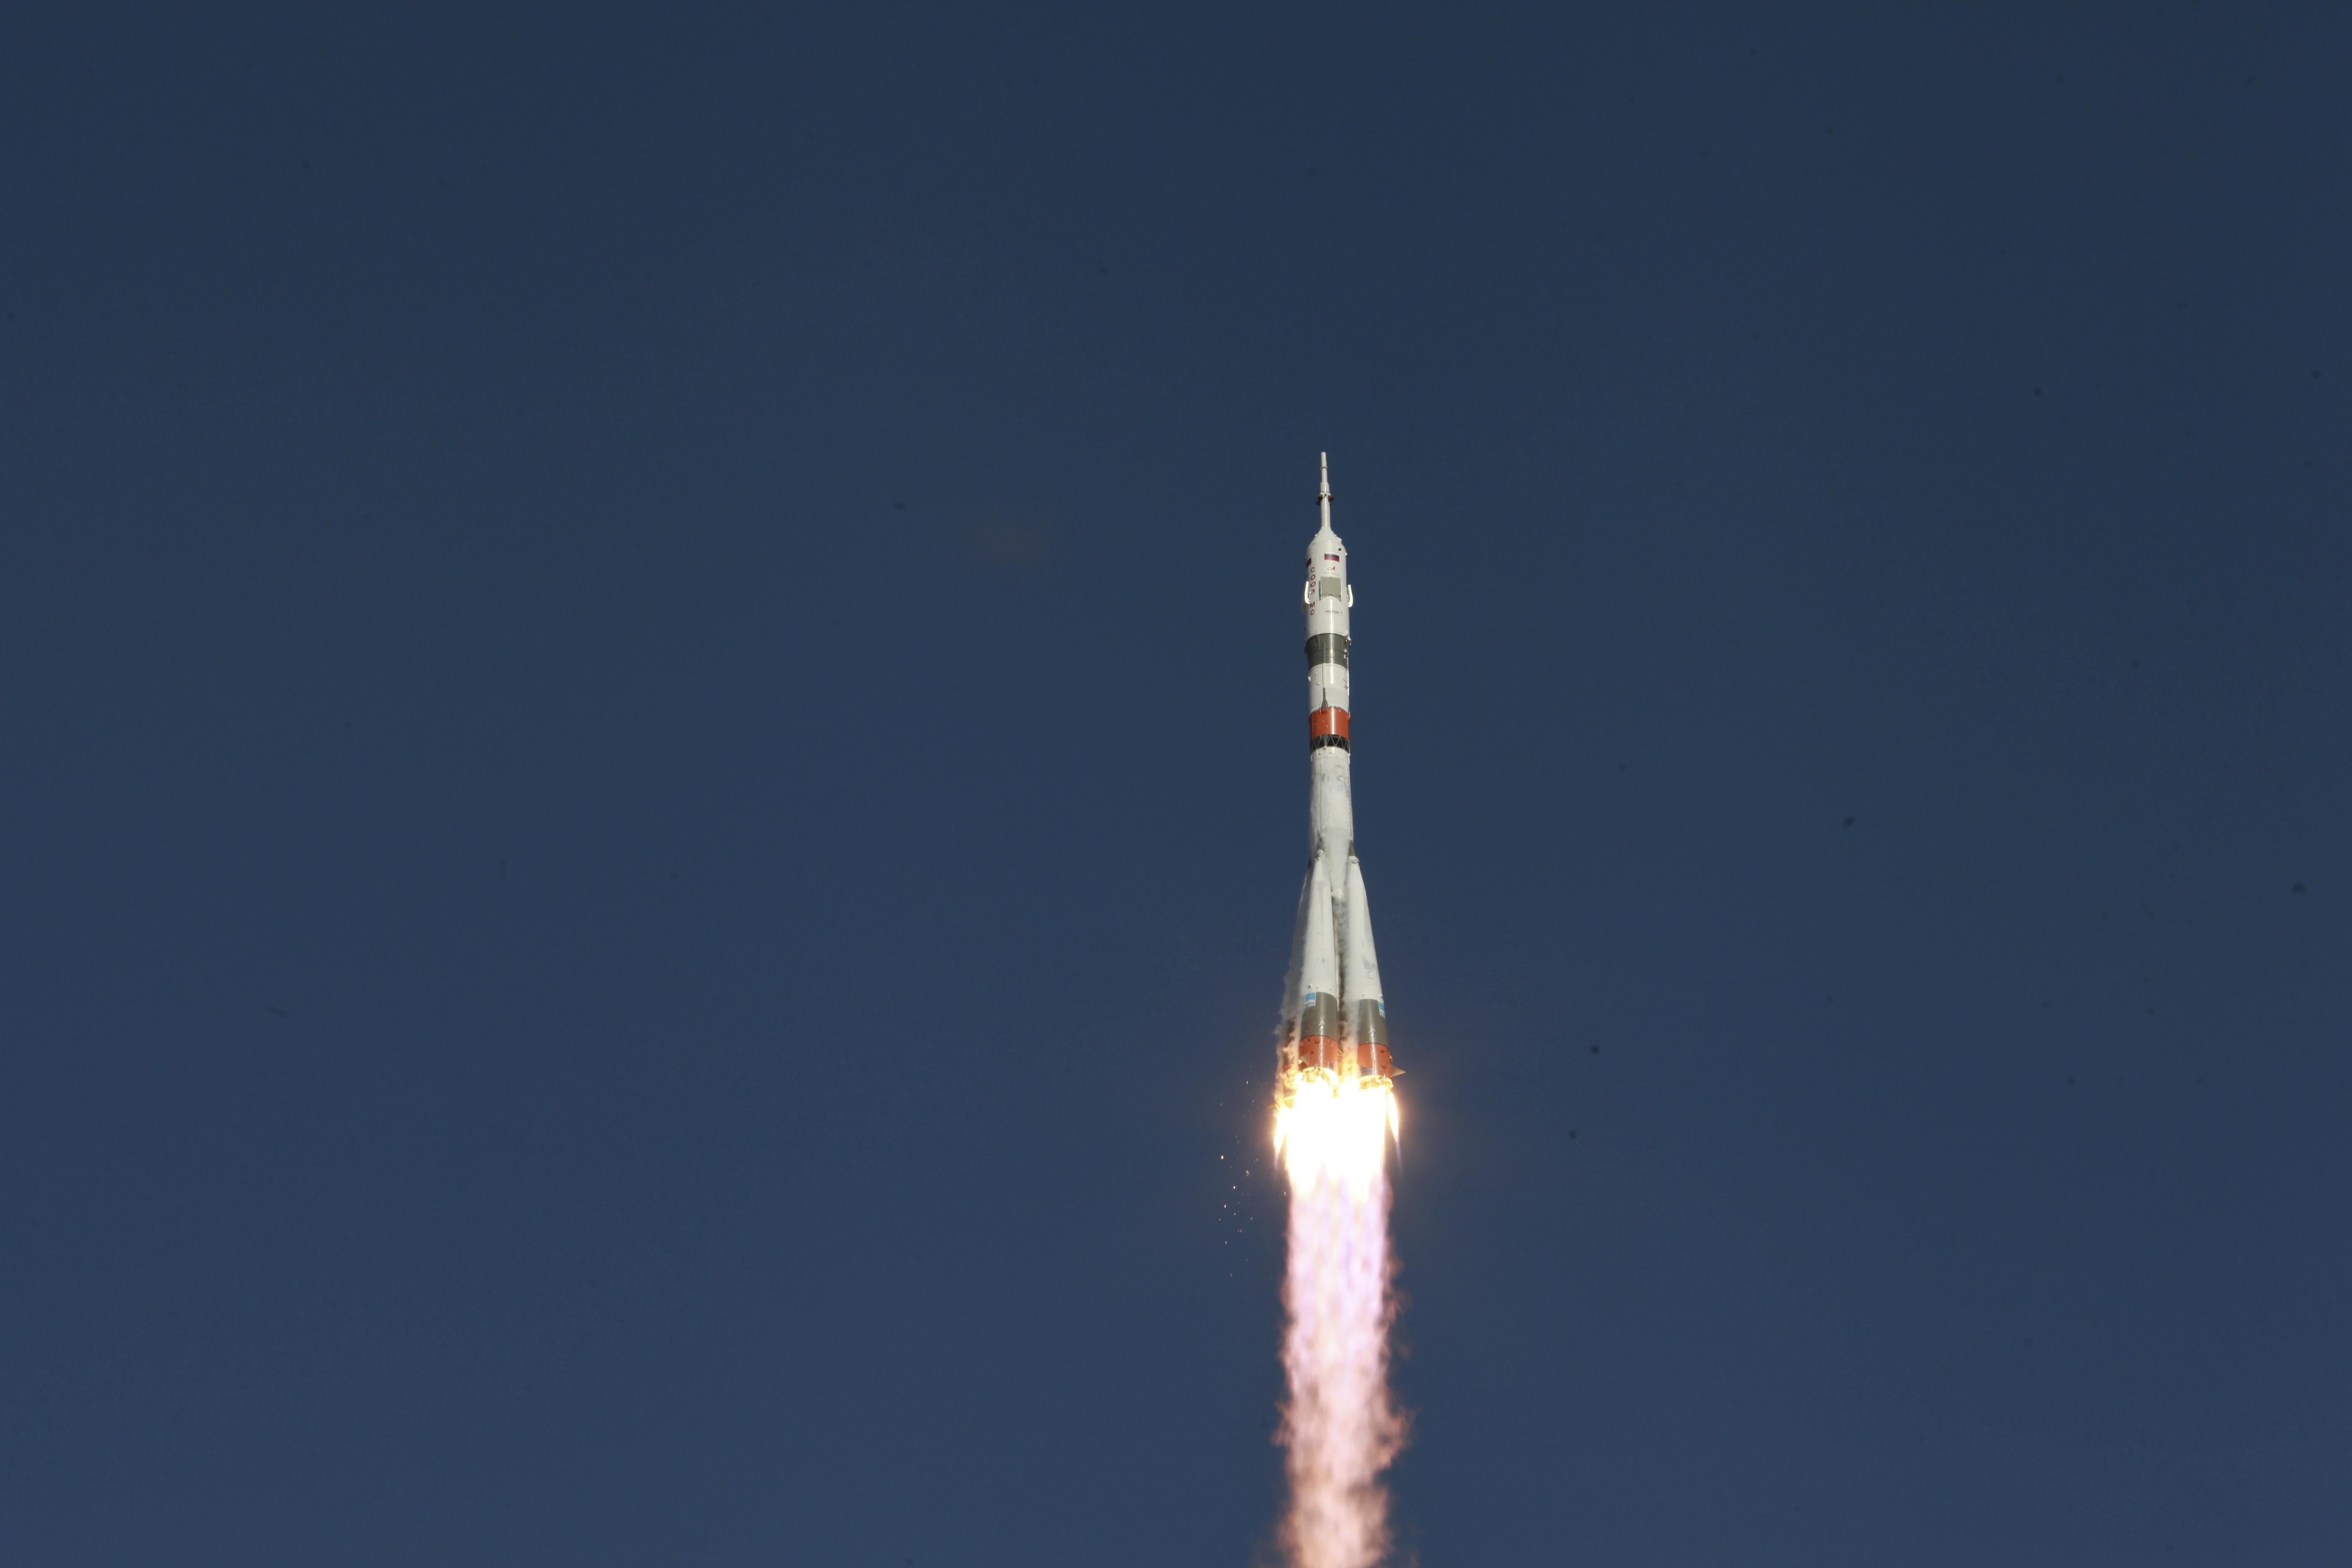 Štart nepilotovanej kozmickej  lode Sojuz-2.1a s loďou Sojuz MS-14, ktorá na Medzinárodnú vesmírnu stanicu (ISS ) letela bez ľudskej posádky s robotom  v kazašskom Bajkonure 22. augusta 2019.